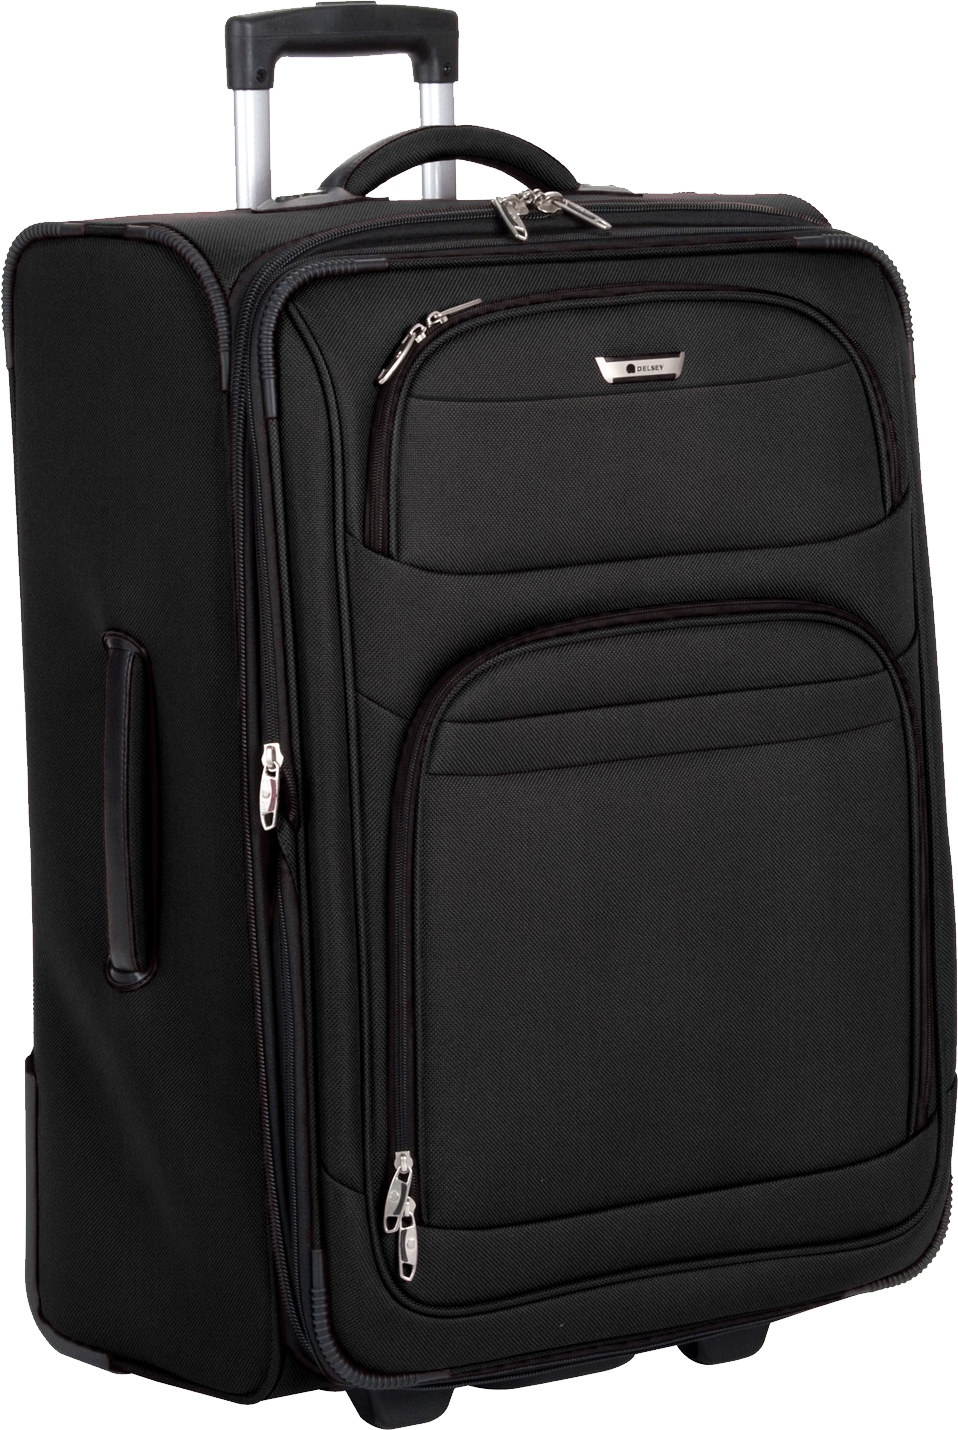 Black Wheeled Carry On Luggage